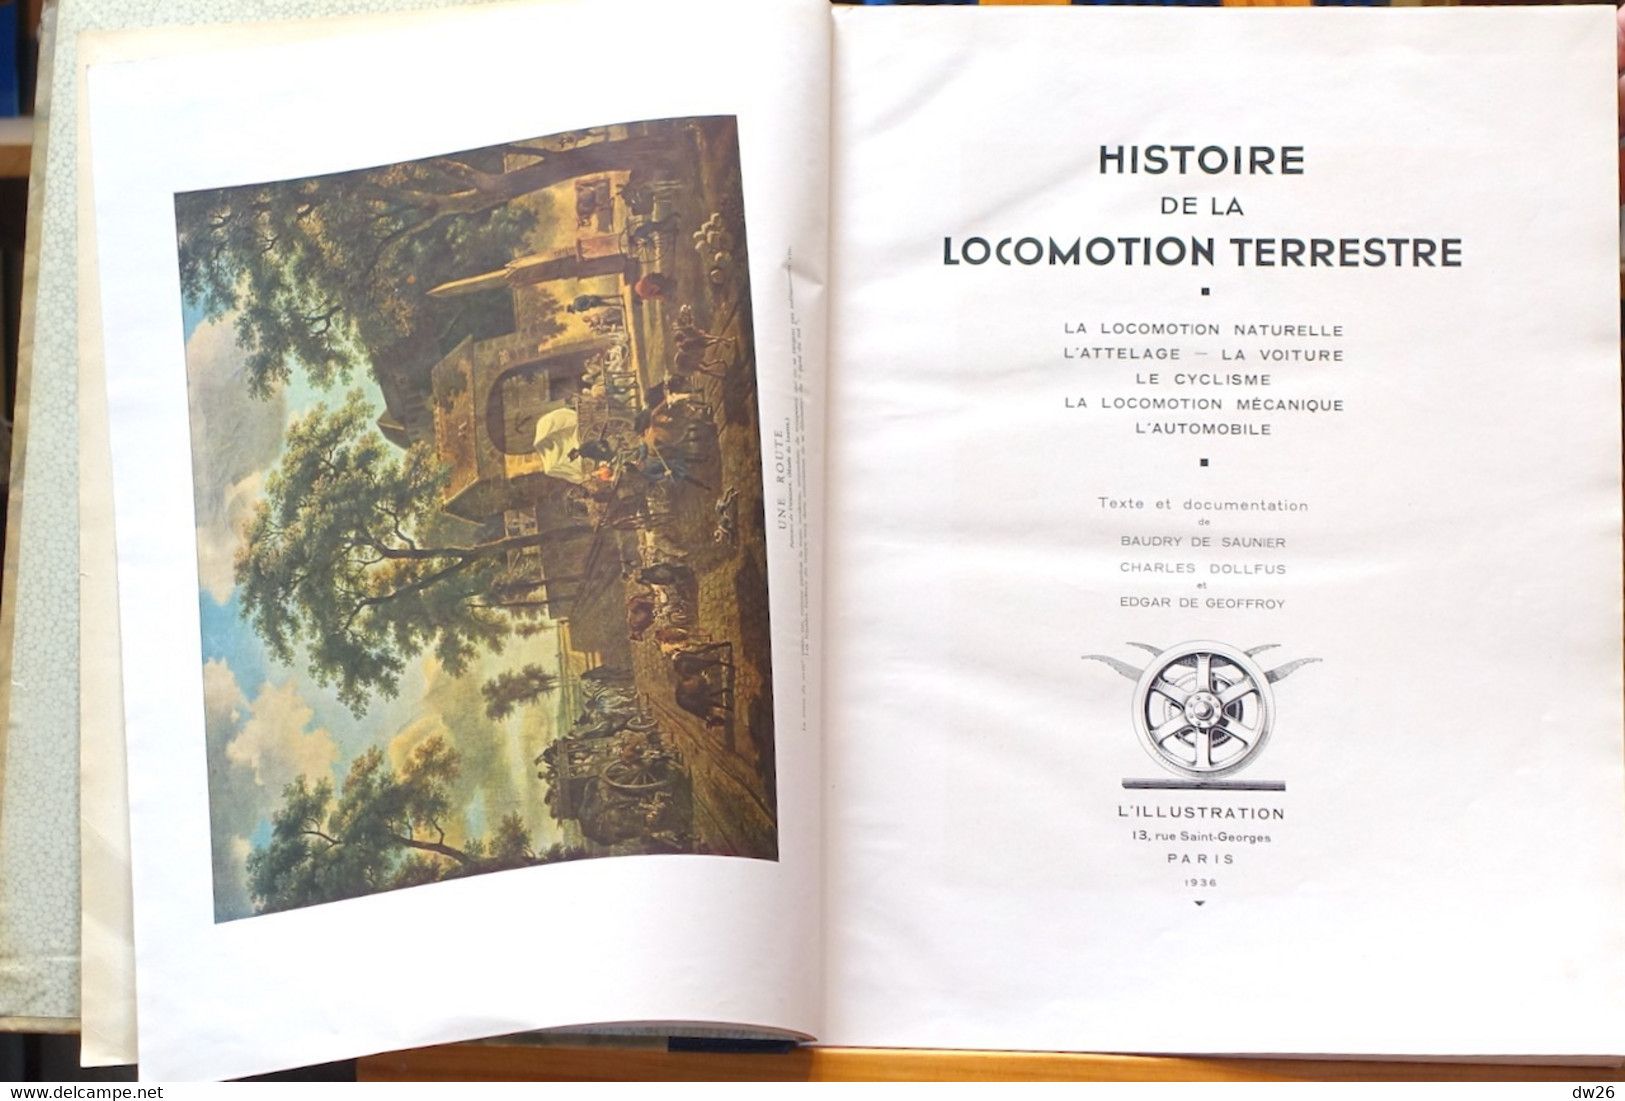 Histoire De La Locomotion Terrestre Naturelle Et Mécanique (Voiture, Cycle, Automobile) Edition L'Illustration 1935 - History